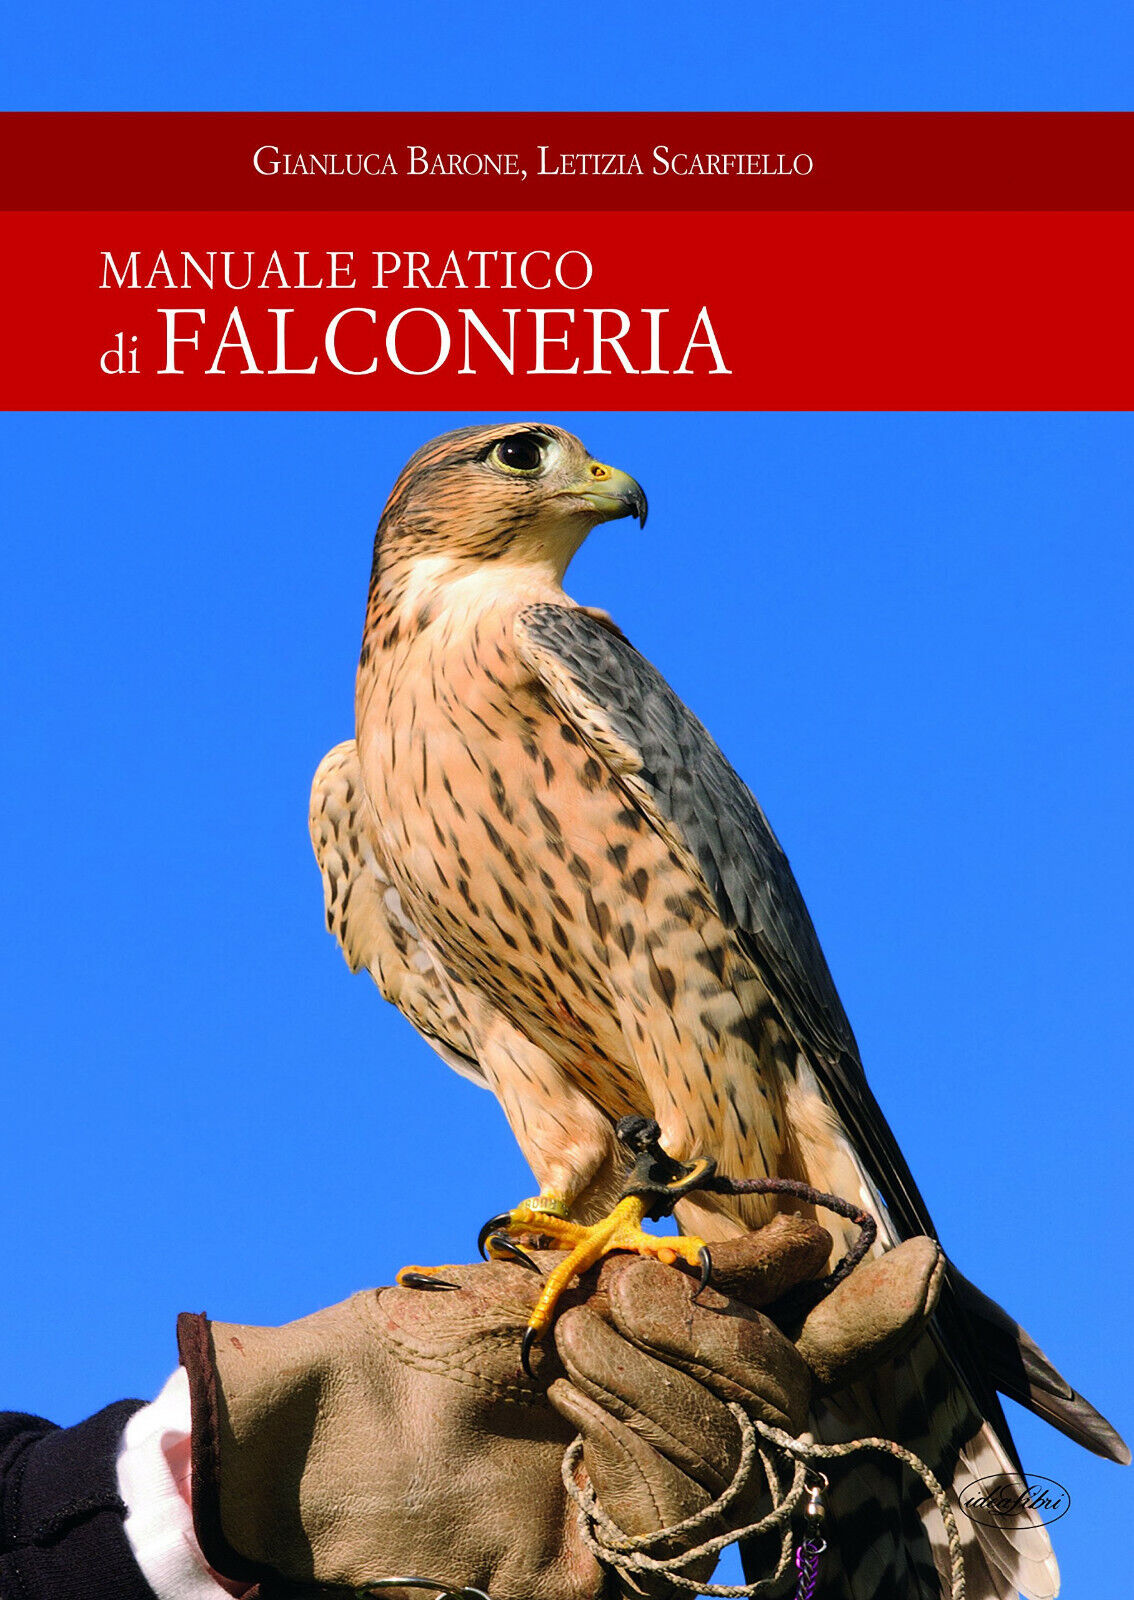 Manuale pratico di falconeria - Gianluca Barone, Letizia Scarfiello - 2017